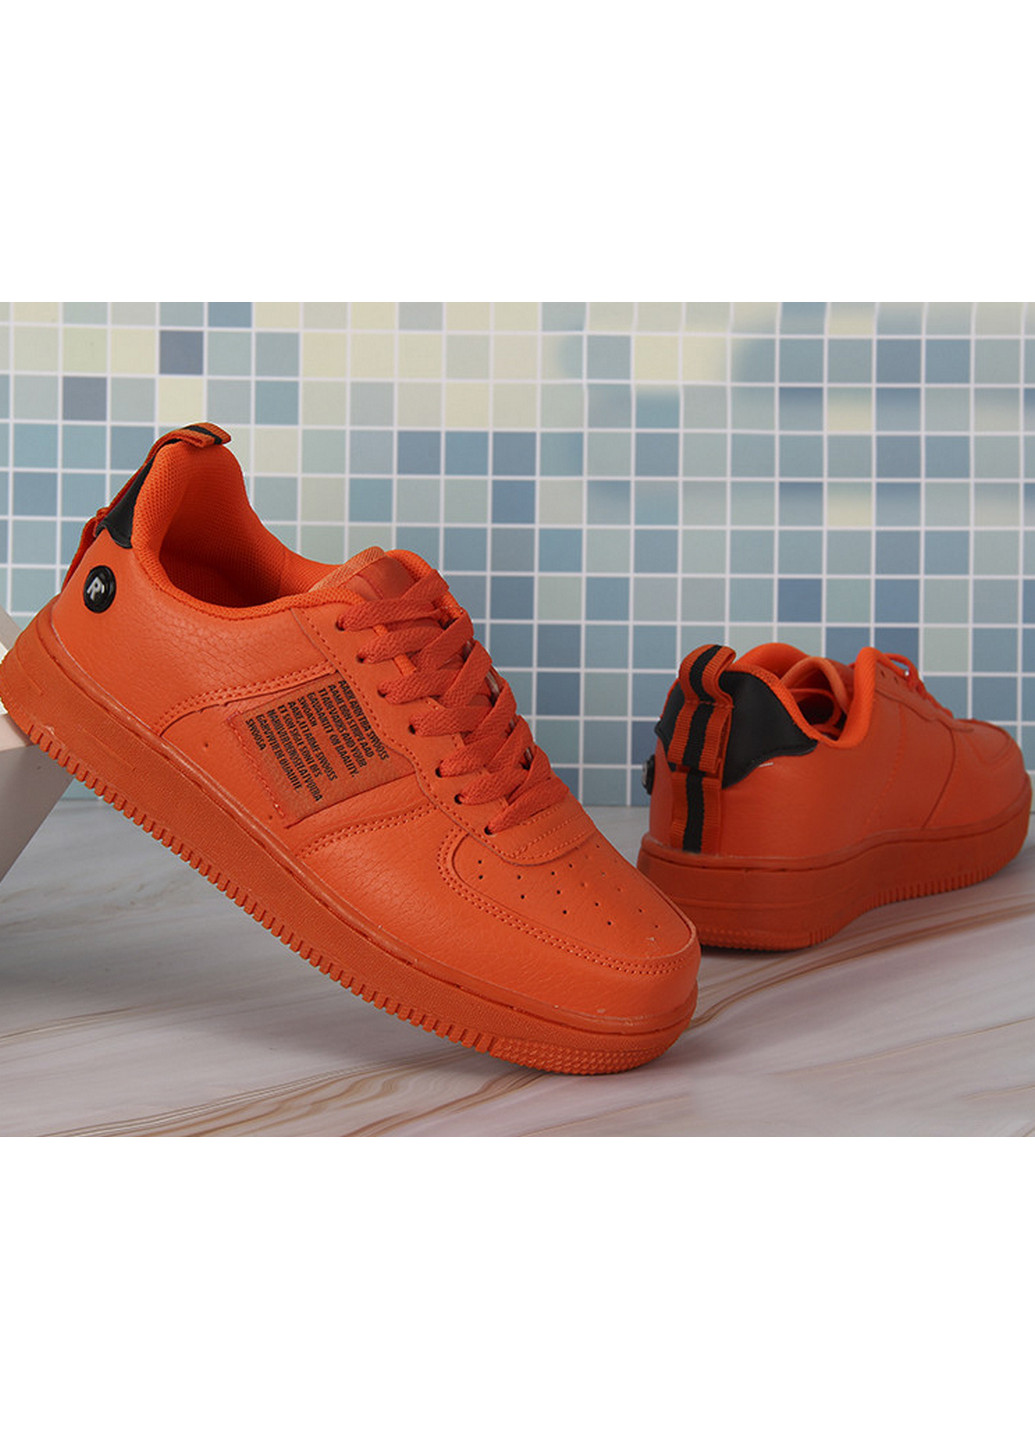 Оранжевые всесезонные кроссовки b21201-11 41 оранжевый Navigator